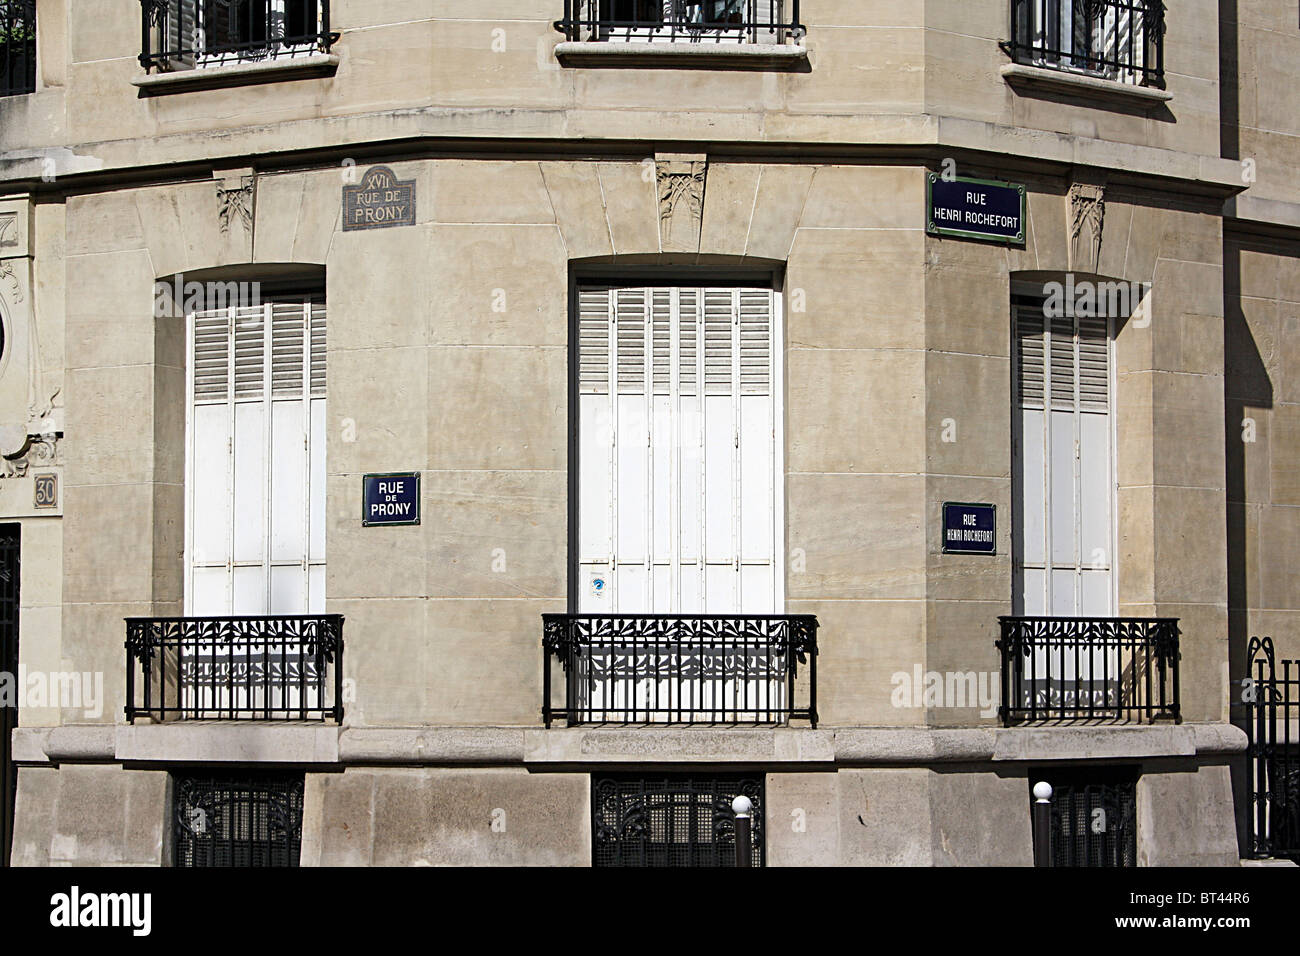 Paris, Gebäude mit zwei Sätzen von Namensschildas der Straße. Stockfoto